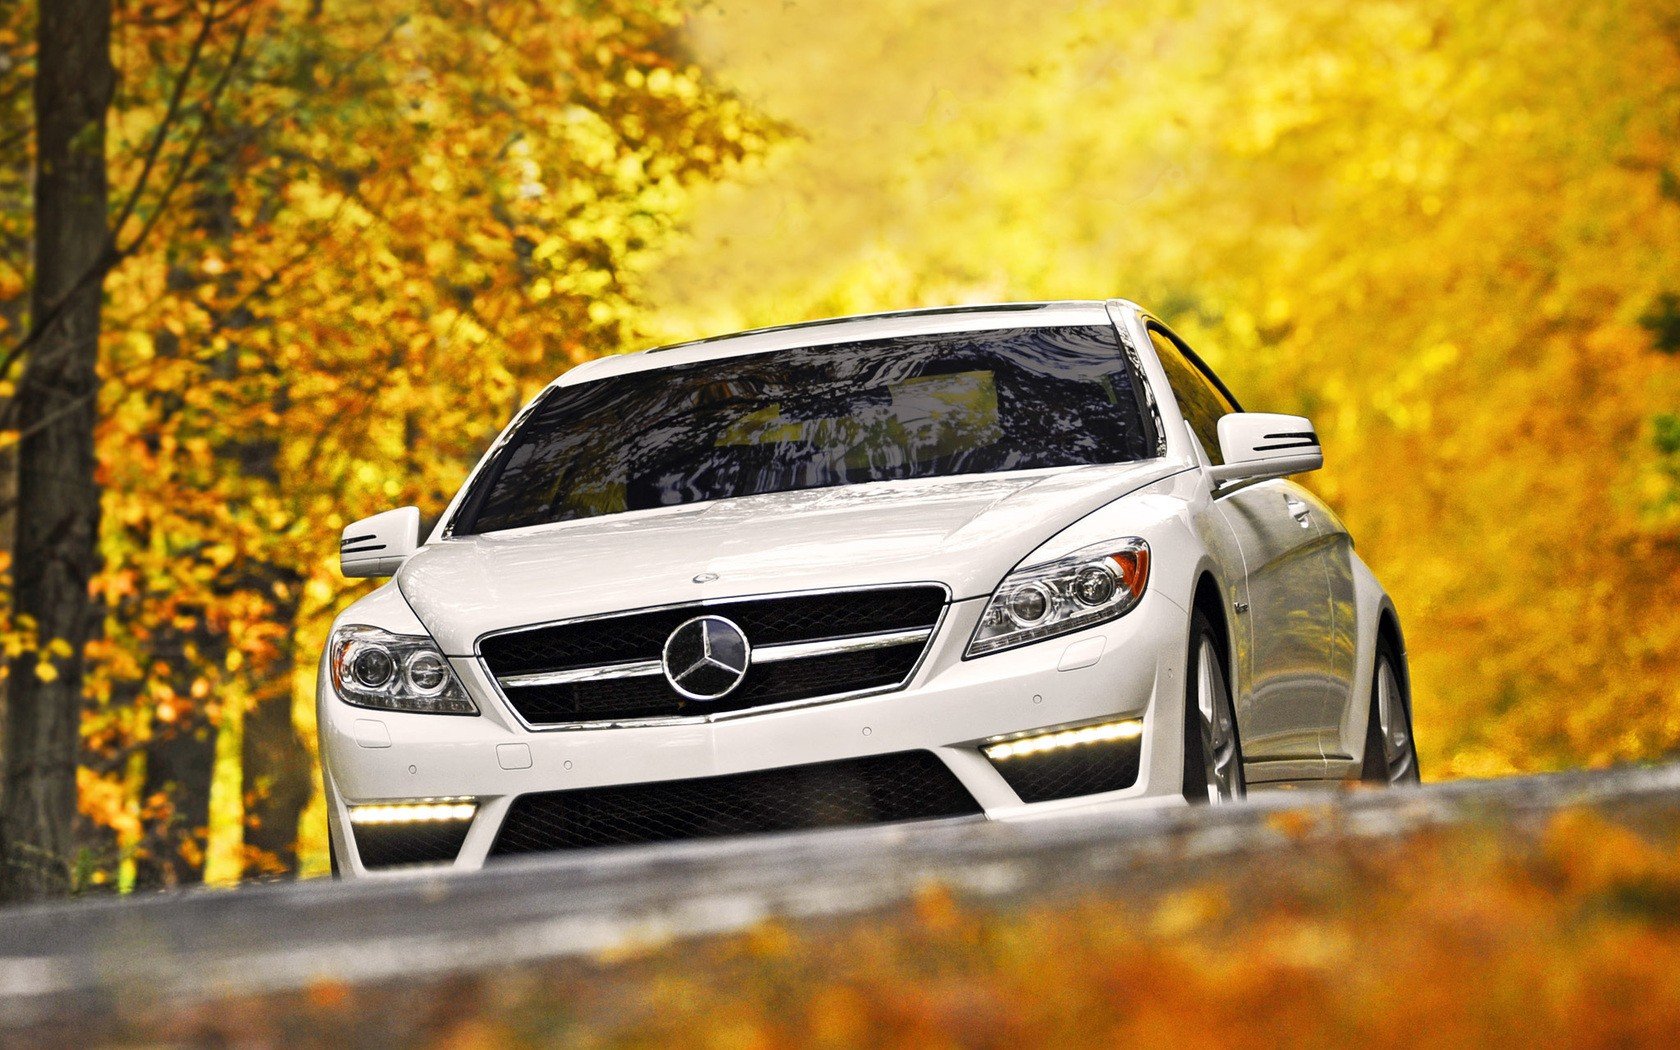 Mercedes Benz Wallpaper Download